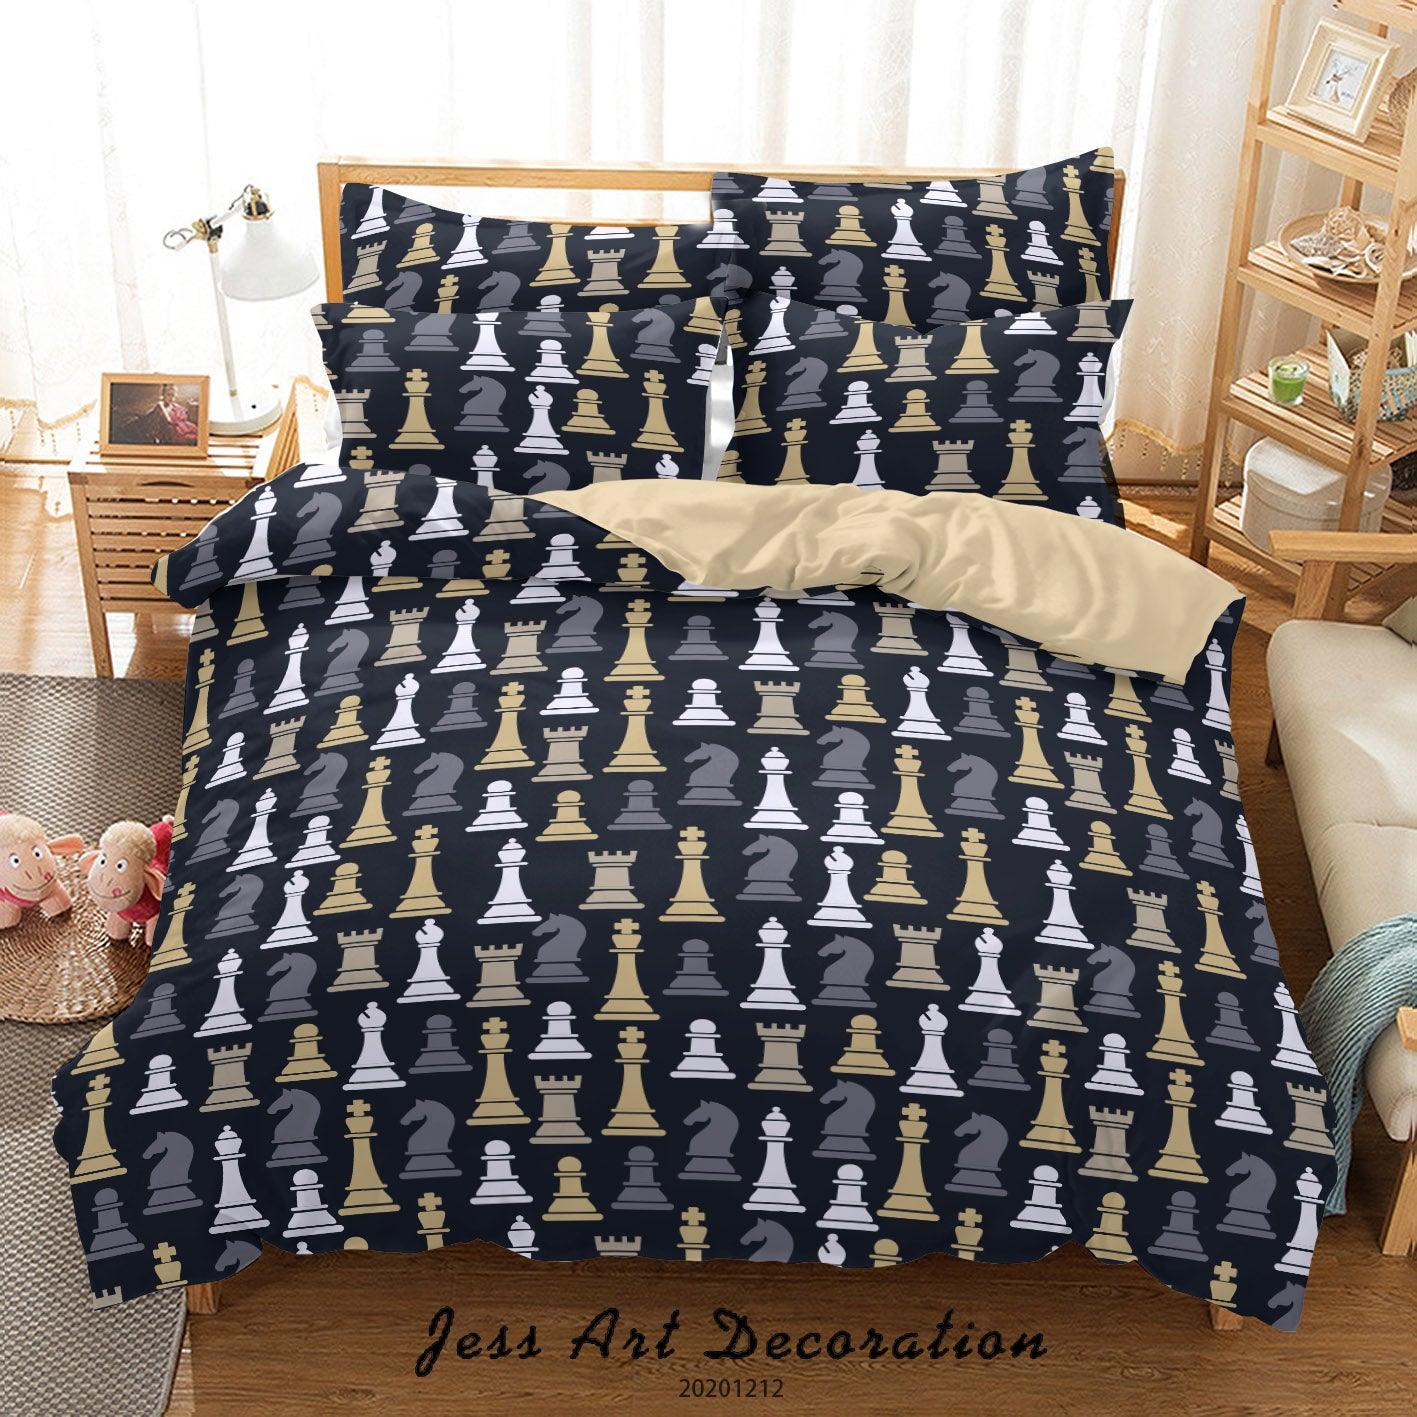 3D Vintage Chess Piece Background Quilt Cover Set Bedding Set Duvet Cover Pillowcases LXL- Jess Art Decoration